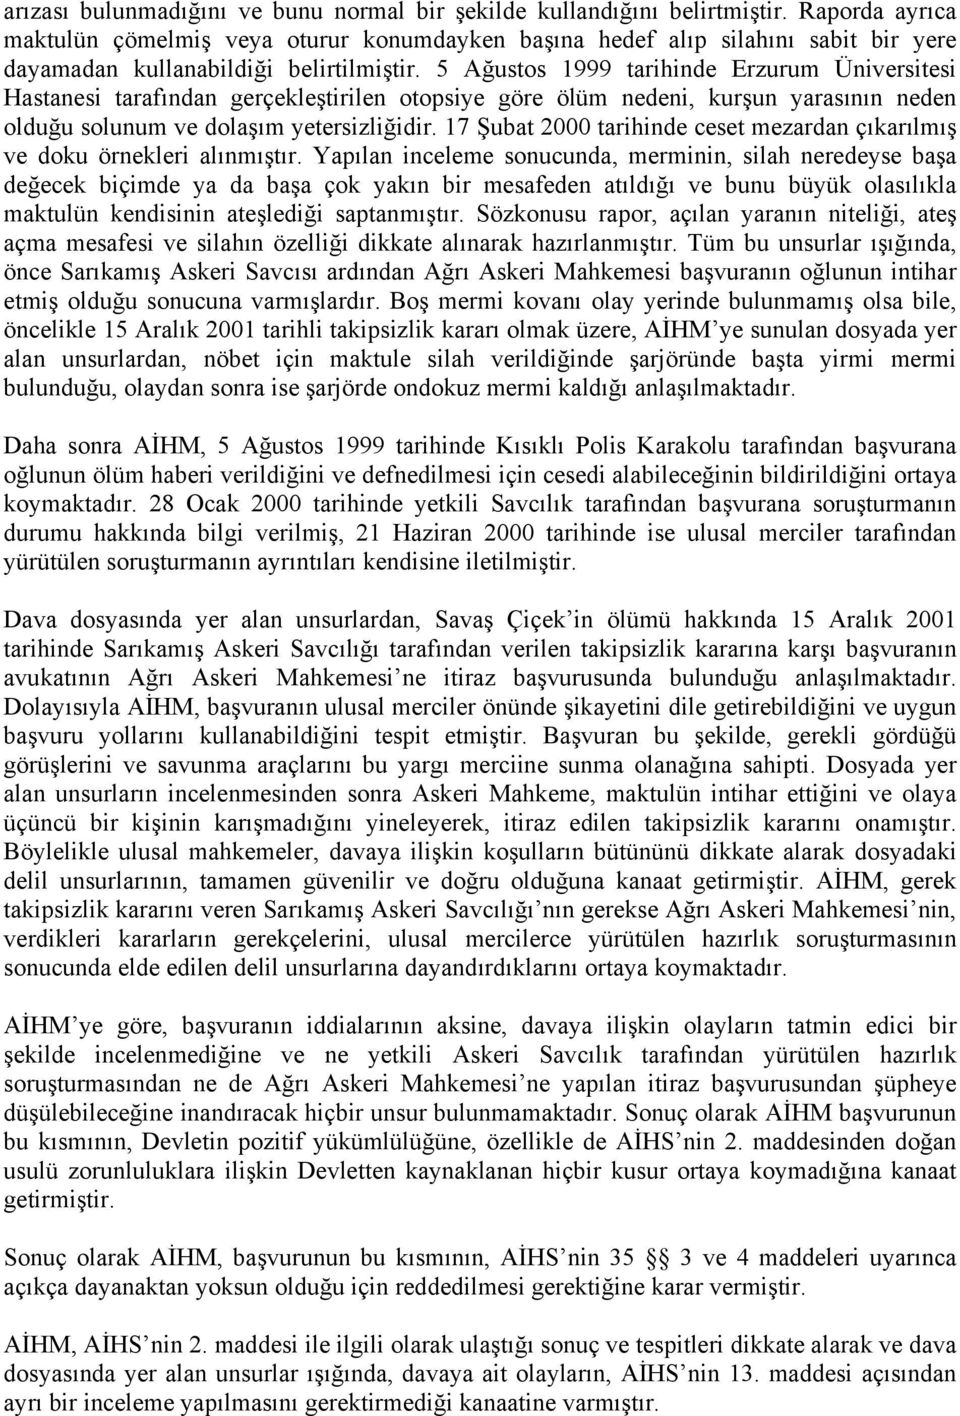 5 Ağustos 1999 tarihinde Erzurum Üniversitesi Hastanesi tarafından gerçekleştirilen otopsiye göre ölüm nedeni, kurşun yarasının neden olduğu solunum ve dolaşım yetersizliğidir.